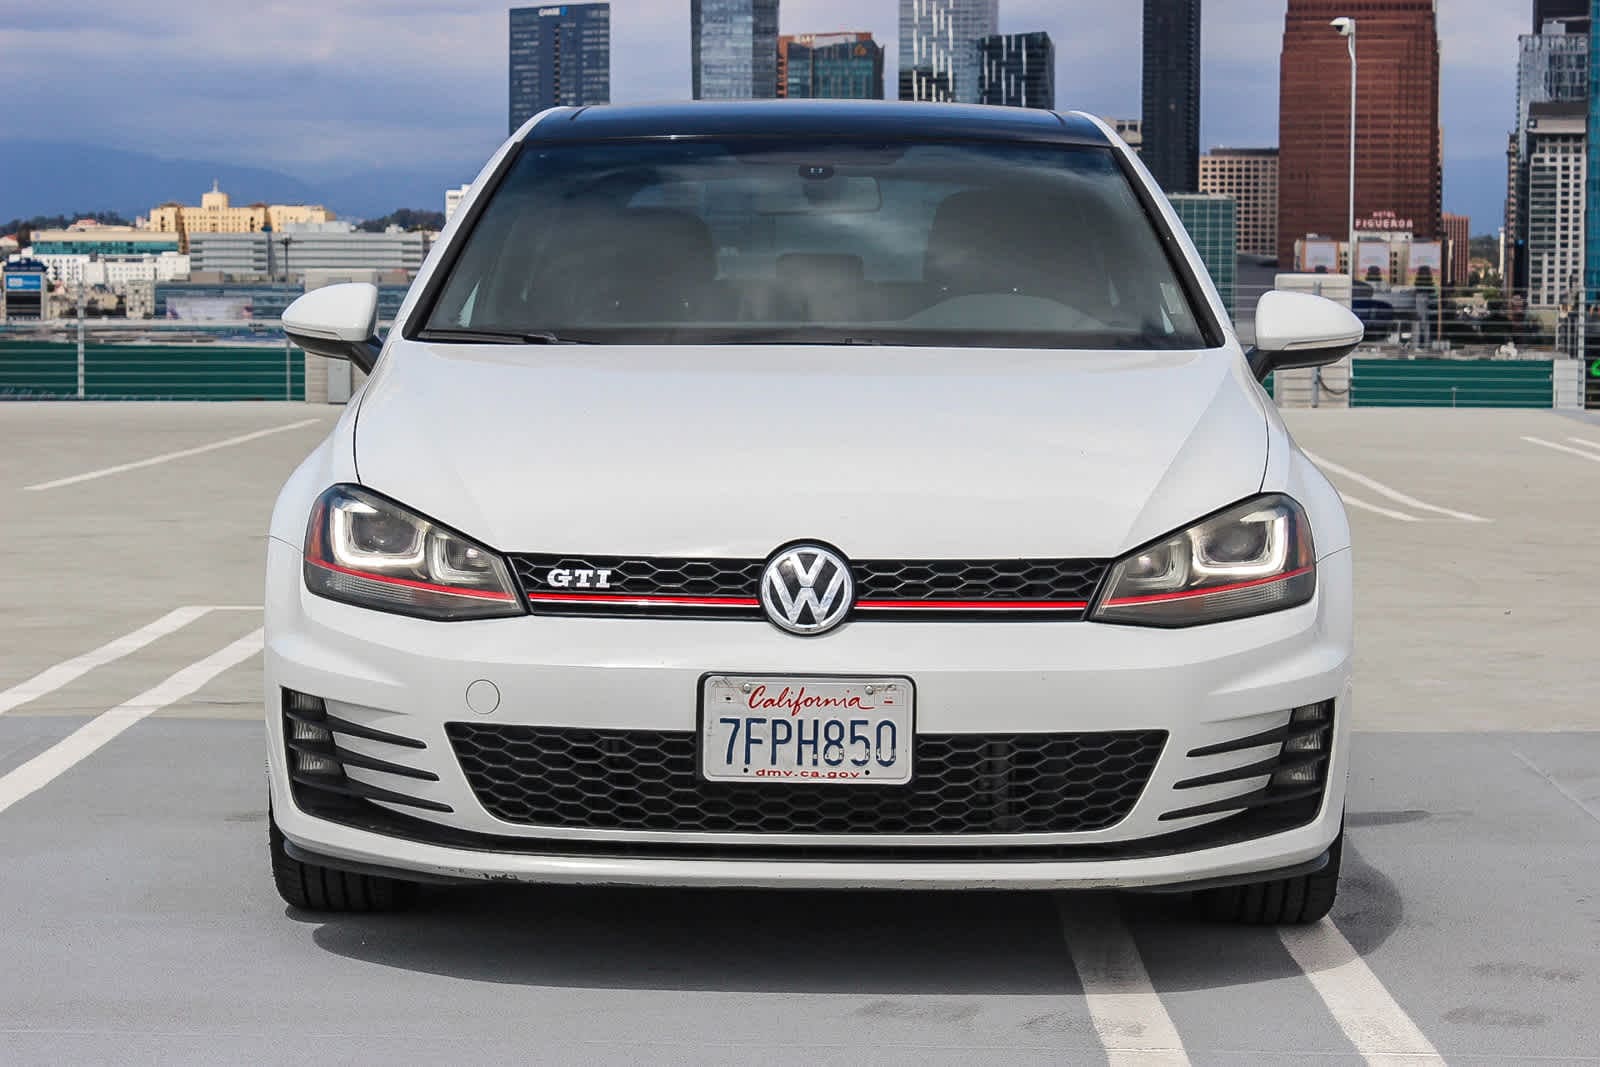 2015 Volkswagen Golf Autobahn 2